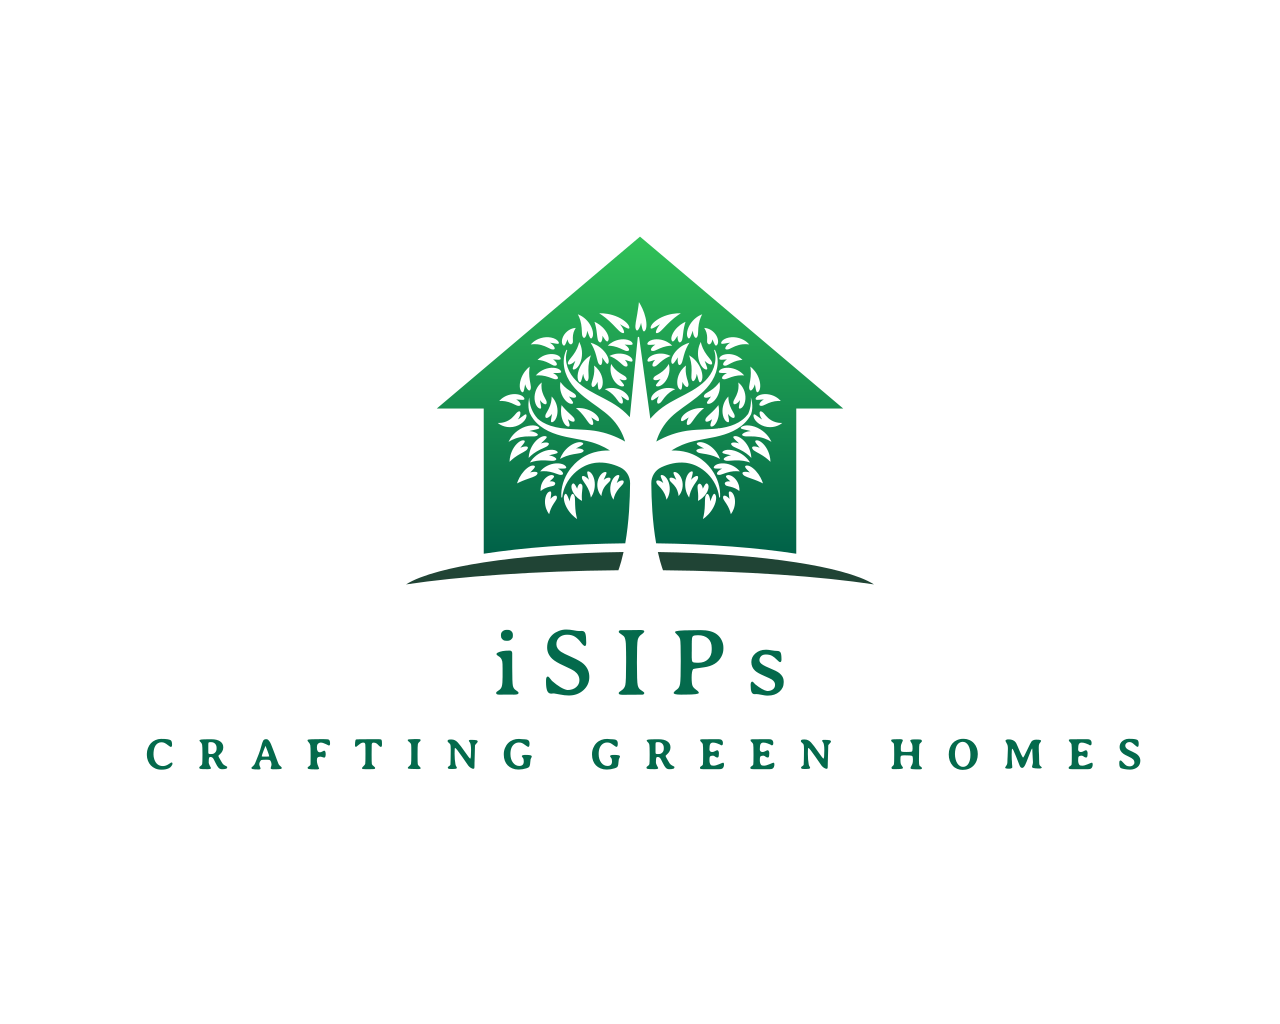 iSIPs.co.uk